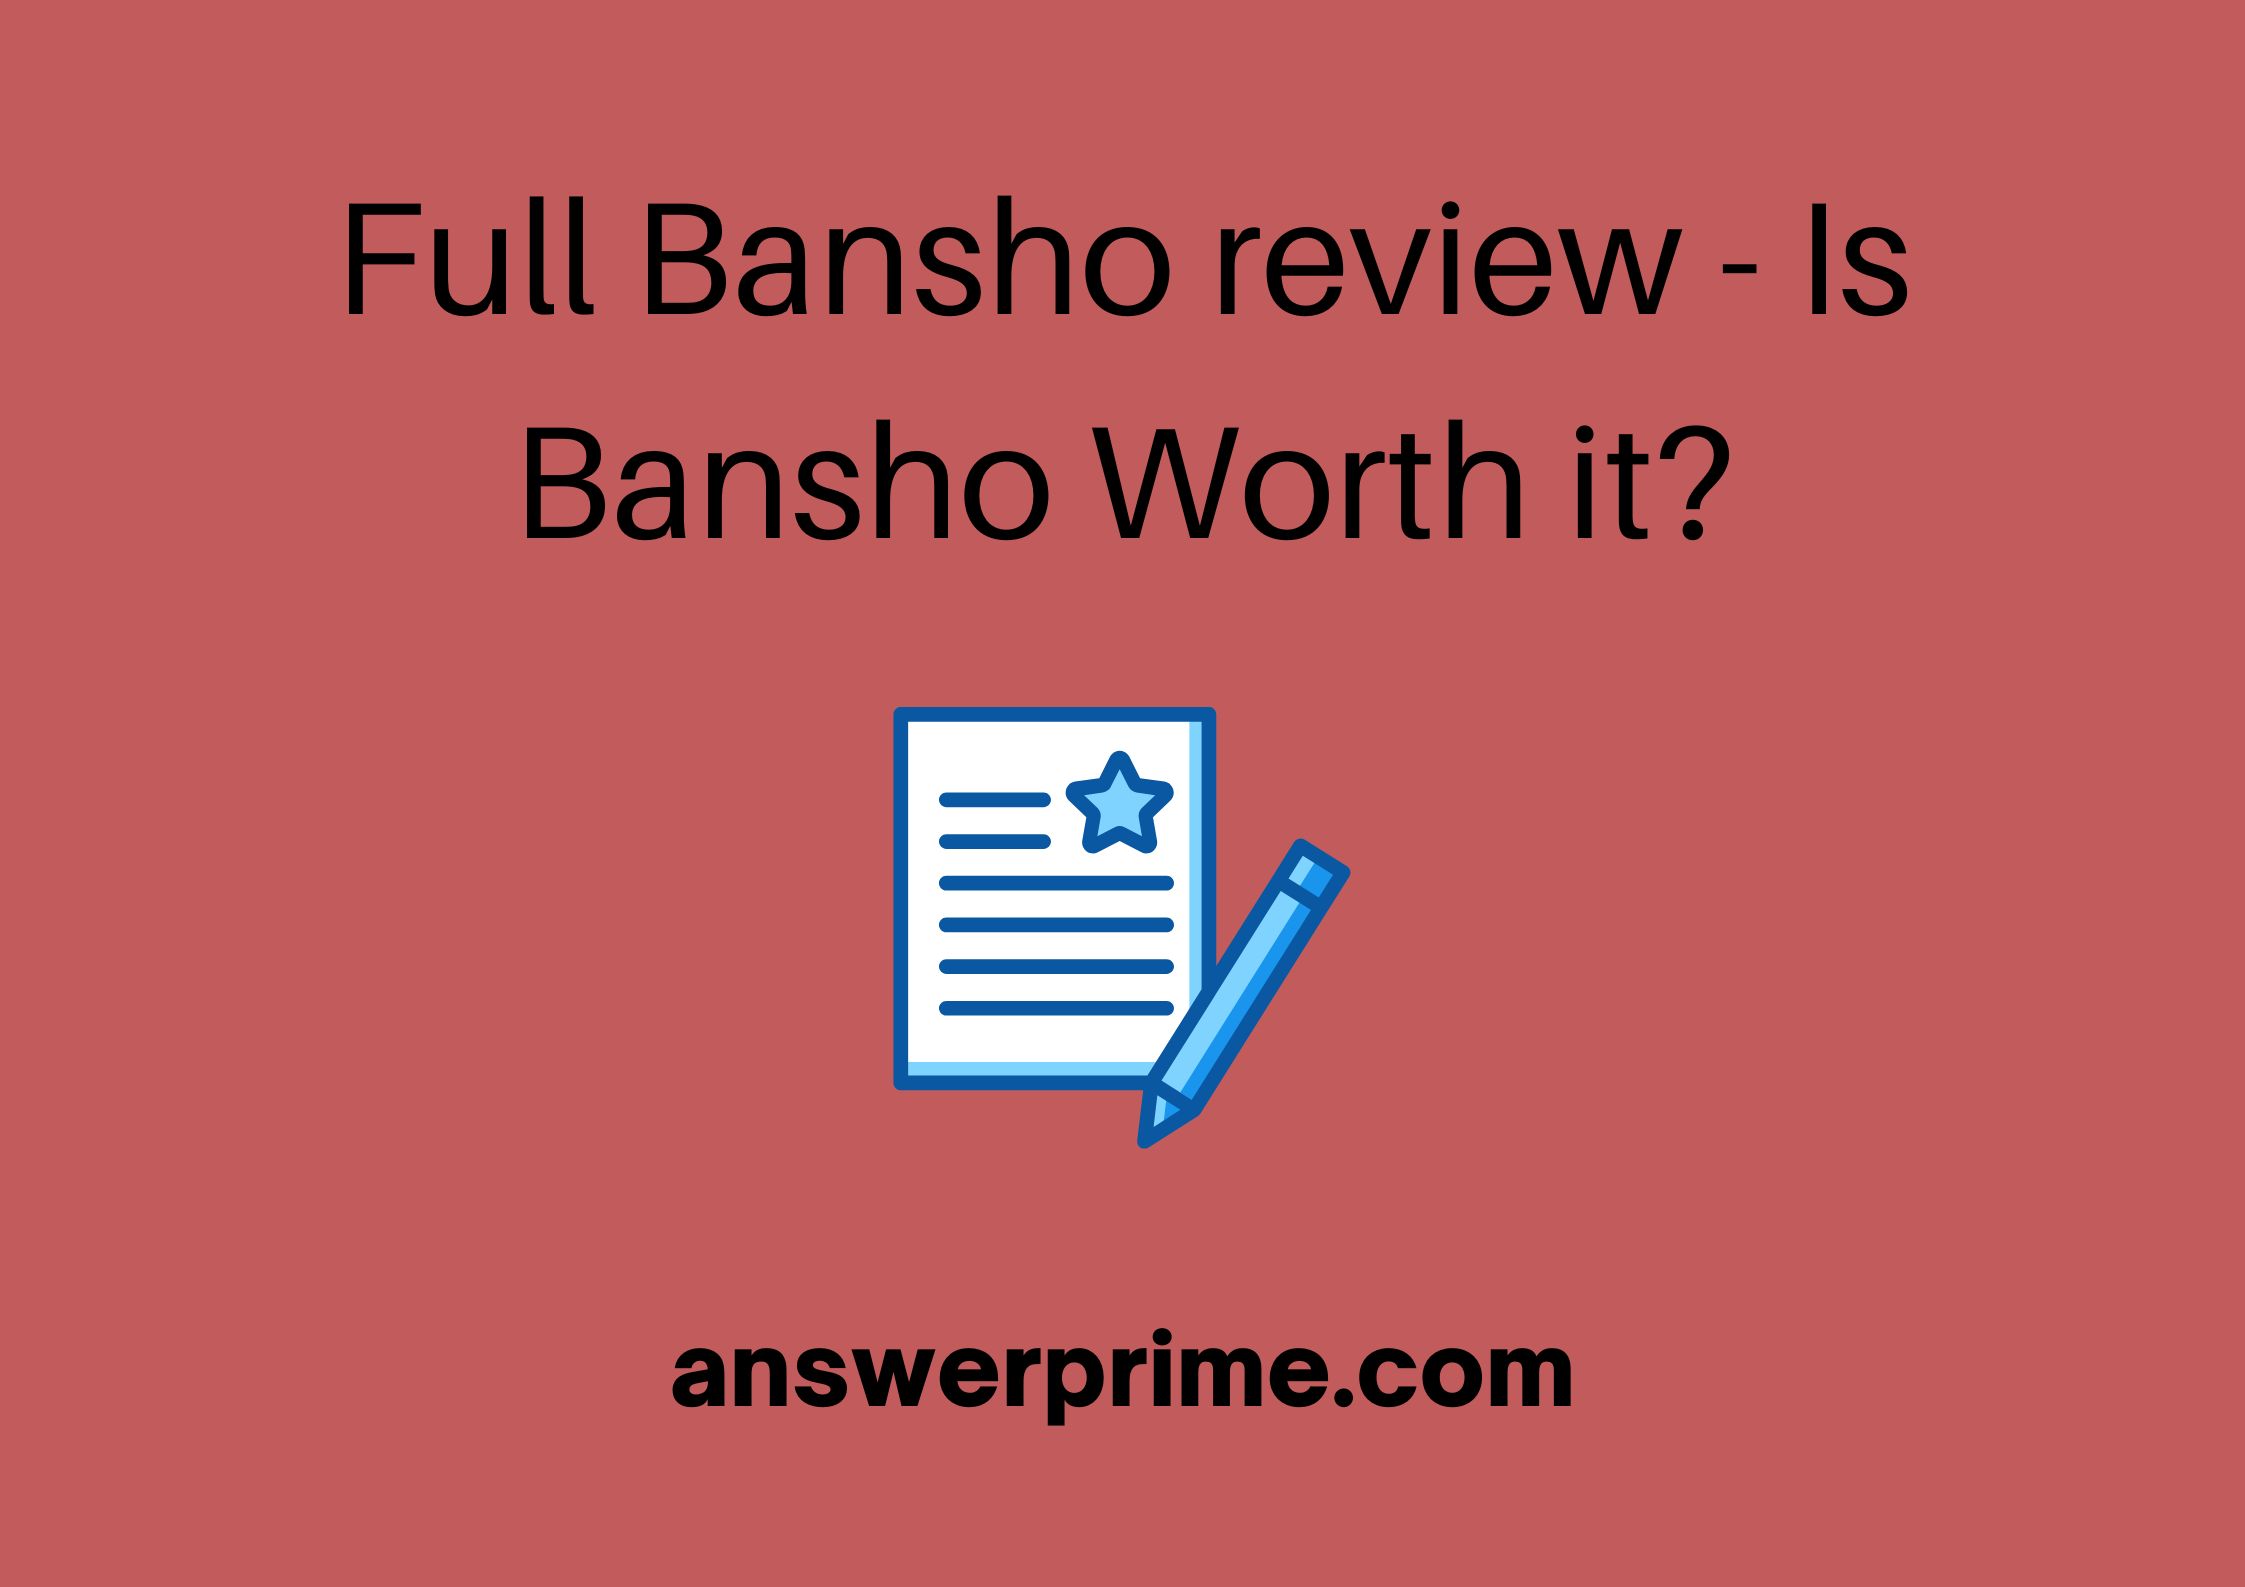 Full bansho review - Is bansho Worth it?